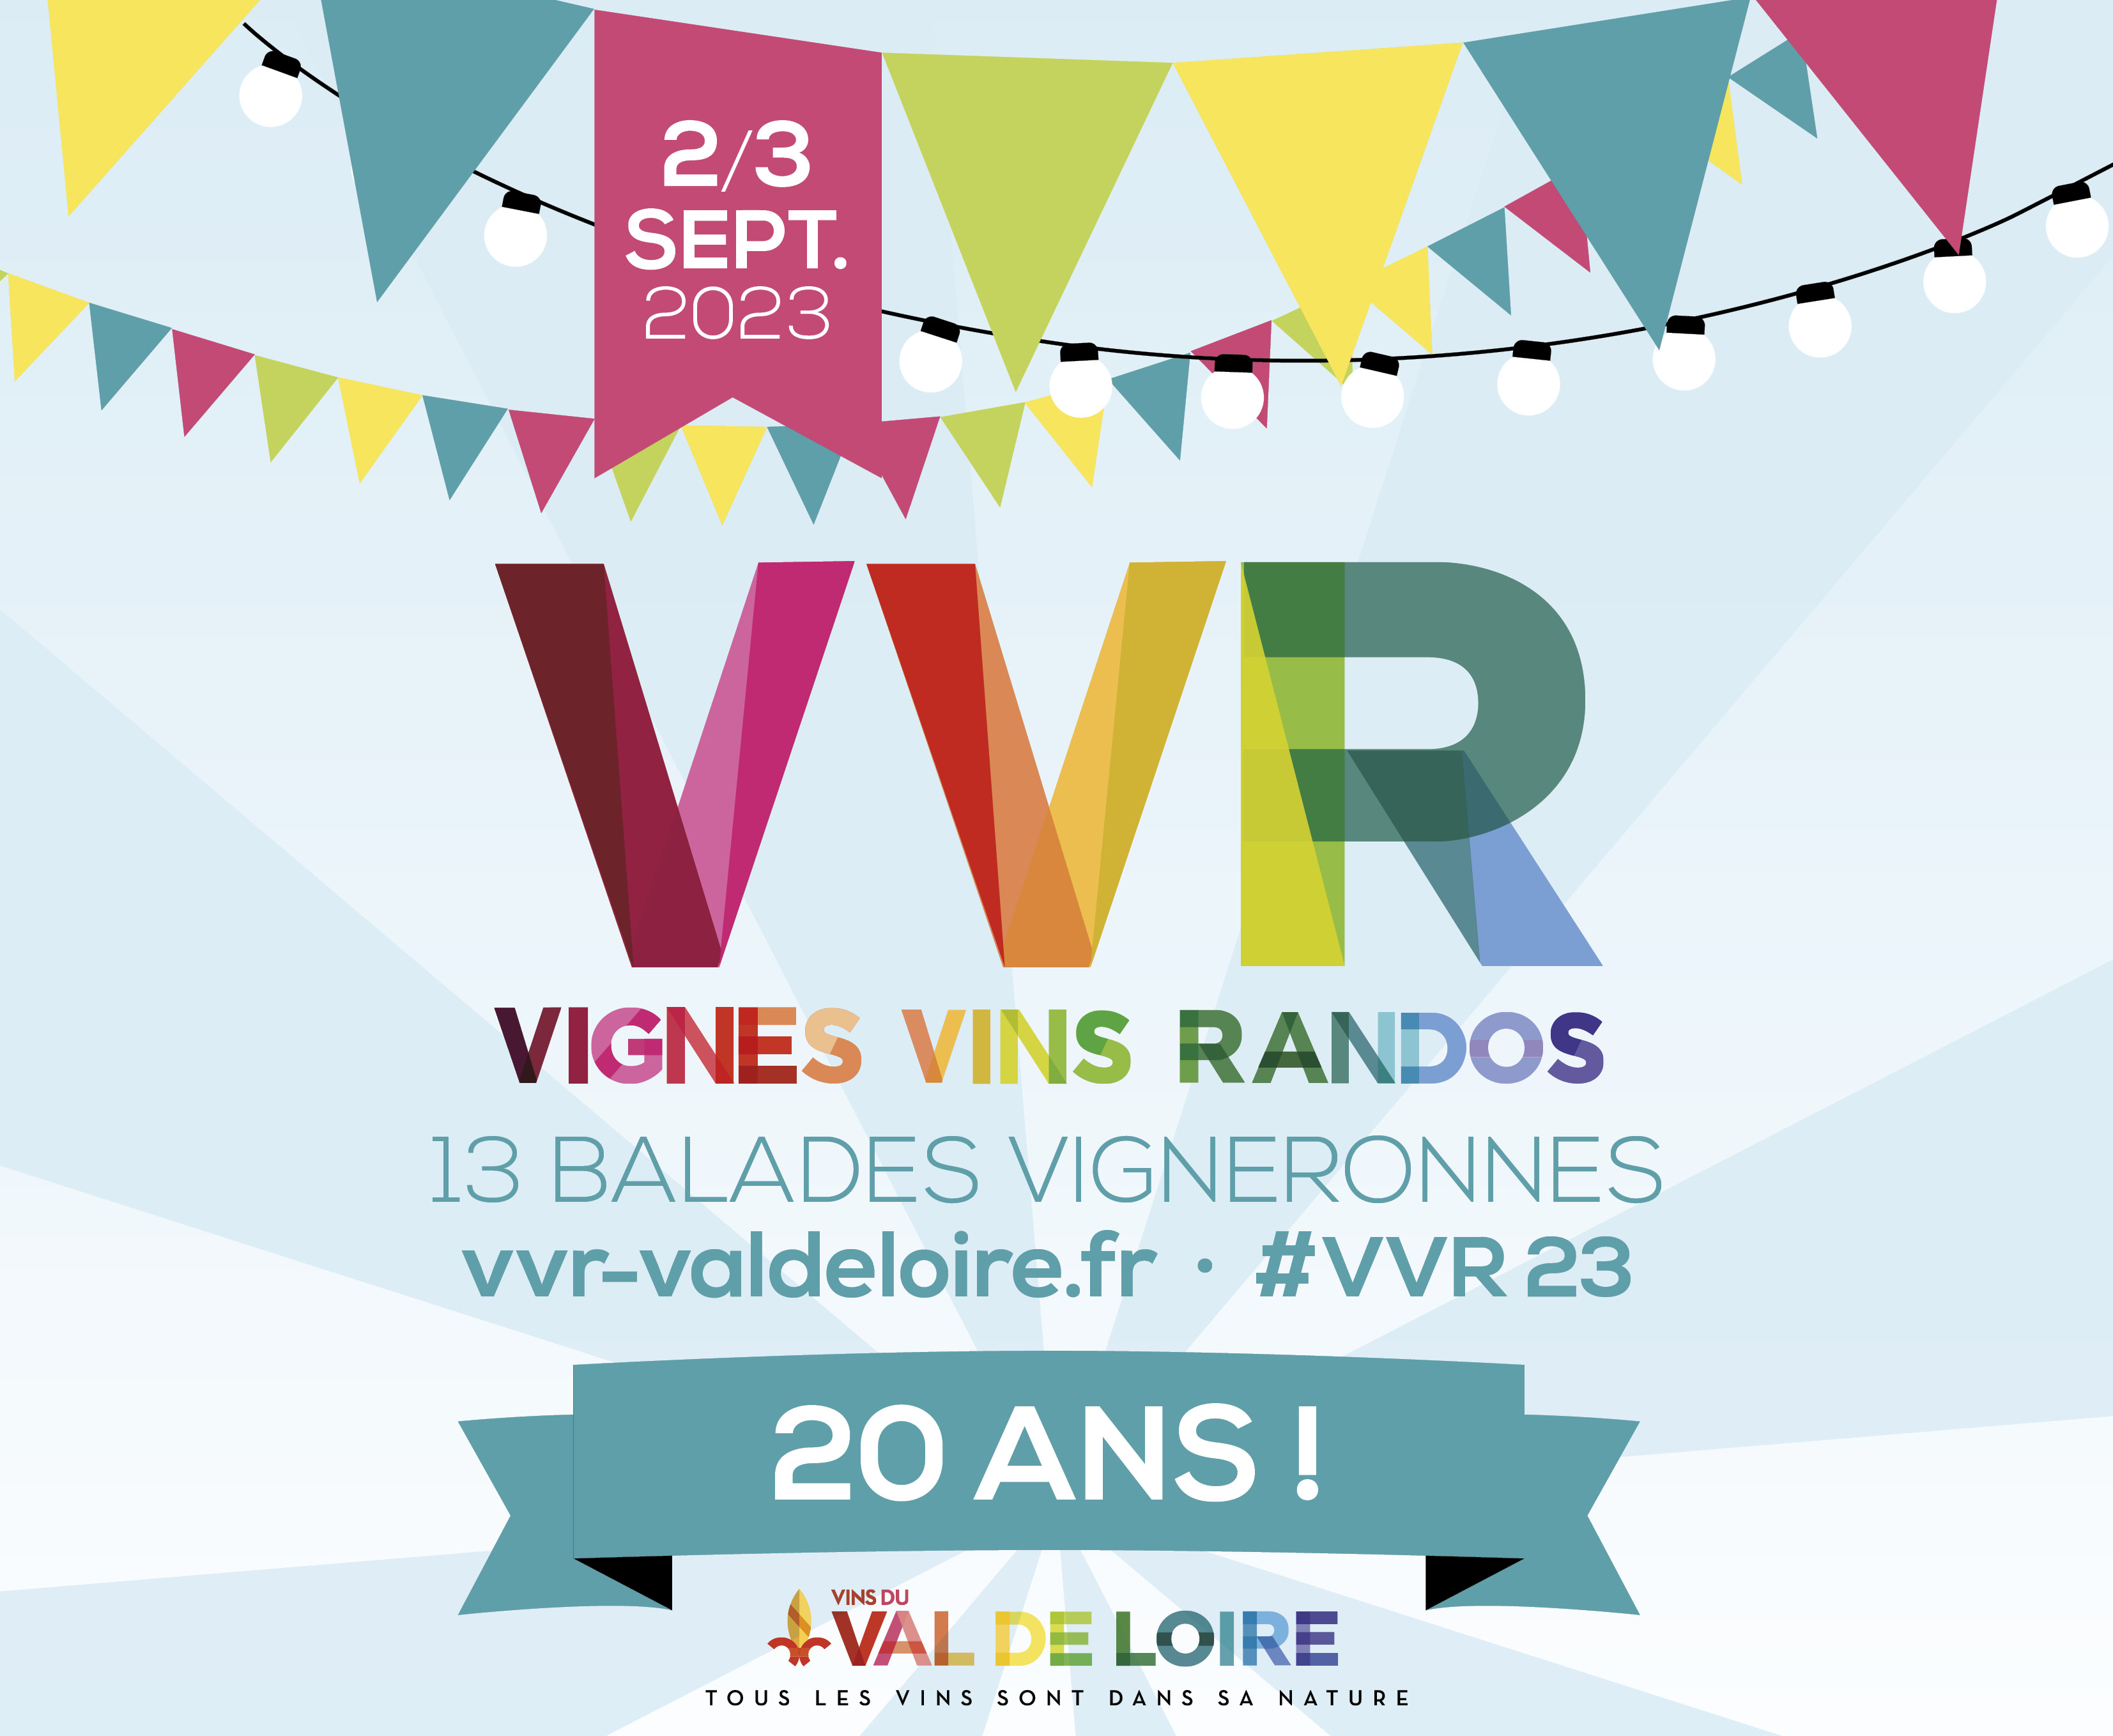 (c) Vvr-valdeloire.fr